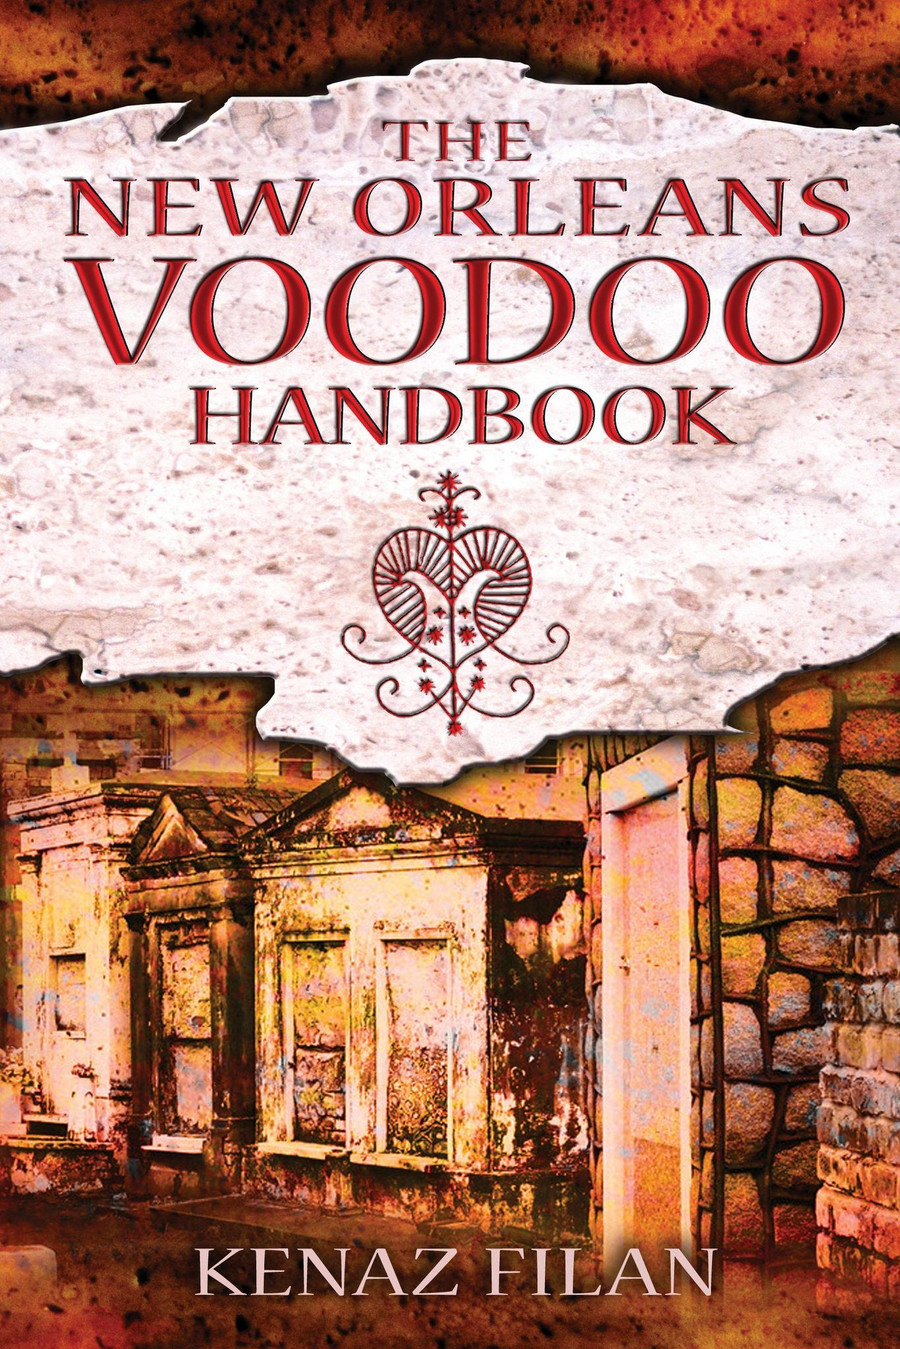 New Orleans Voodoo Handbook by Kenaz Filan